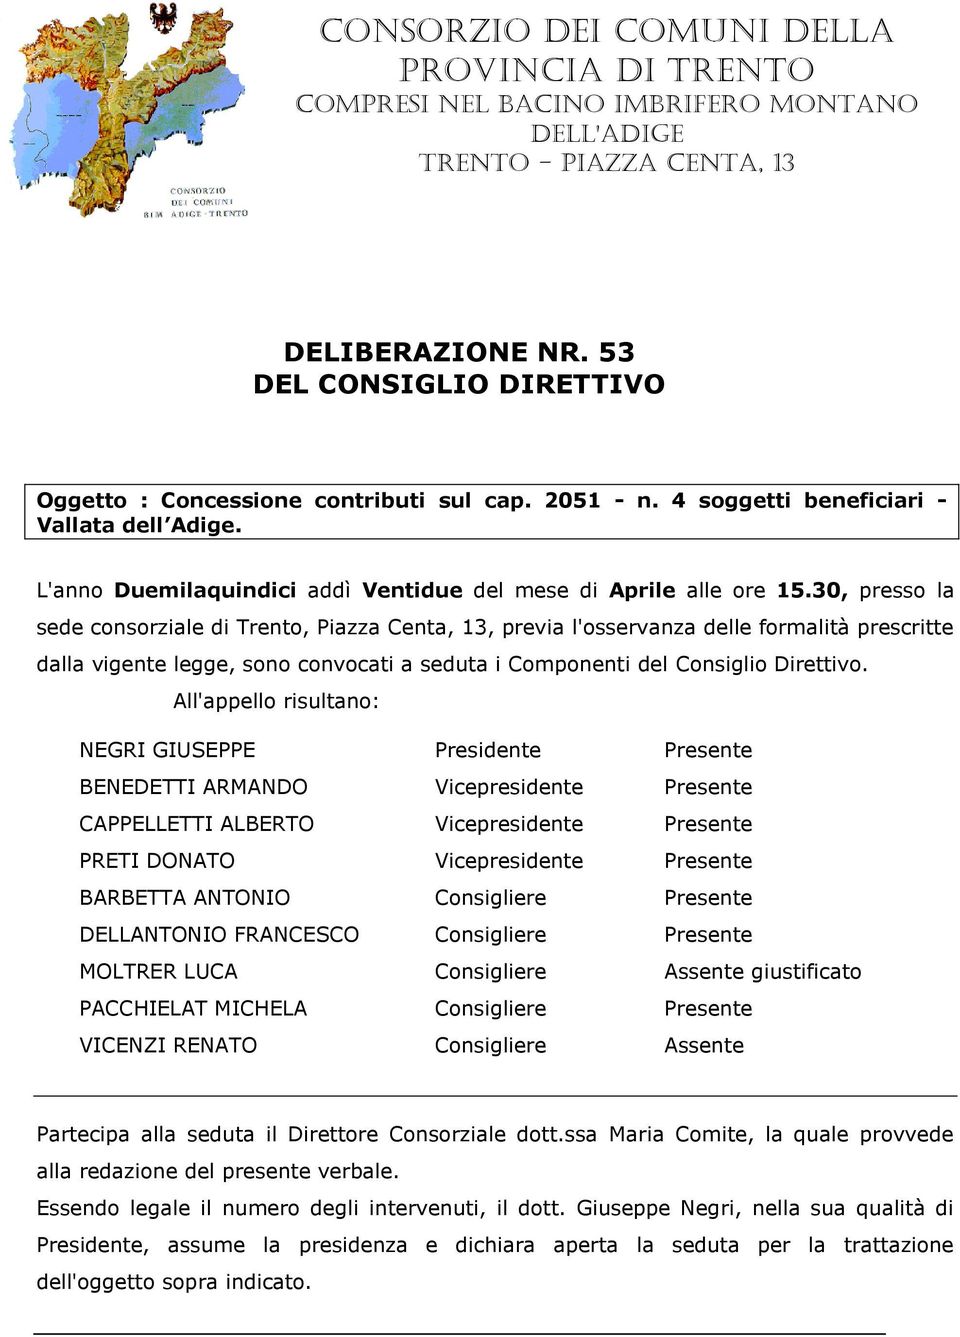 30, presso la sede consorziale di Trento, Piazza Centa, 13, previa l'osservanza delle formalità prescritte dalla vigente legge, sono convocati a seduta i Componenti del Consiglio Direttivo.